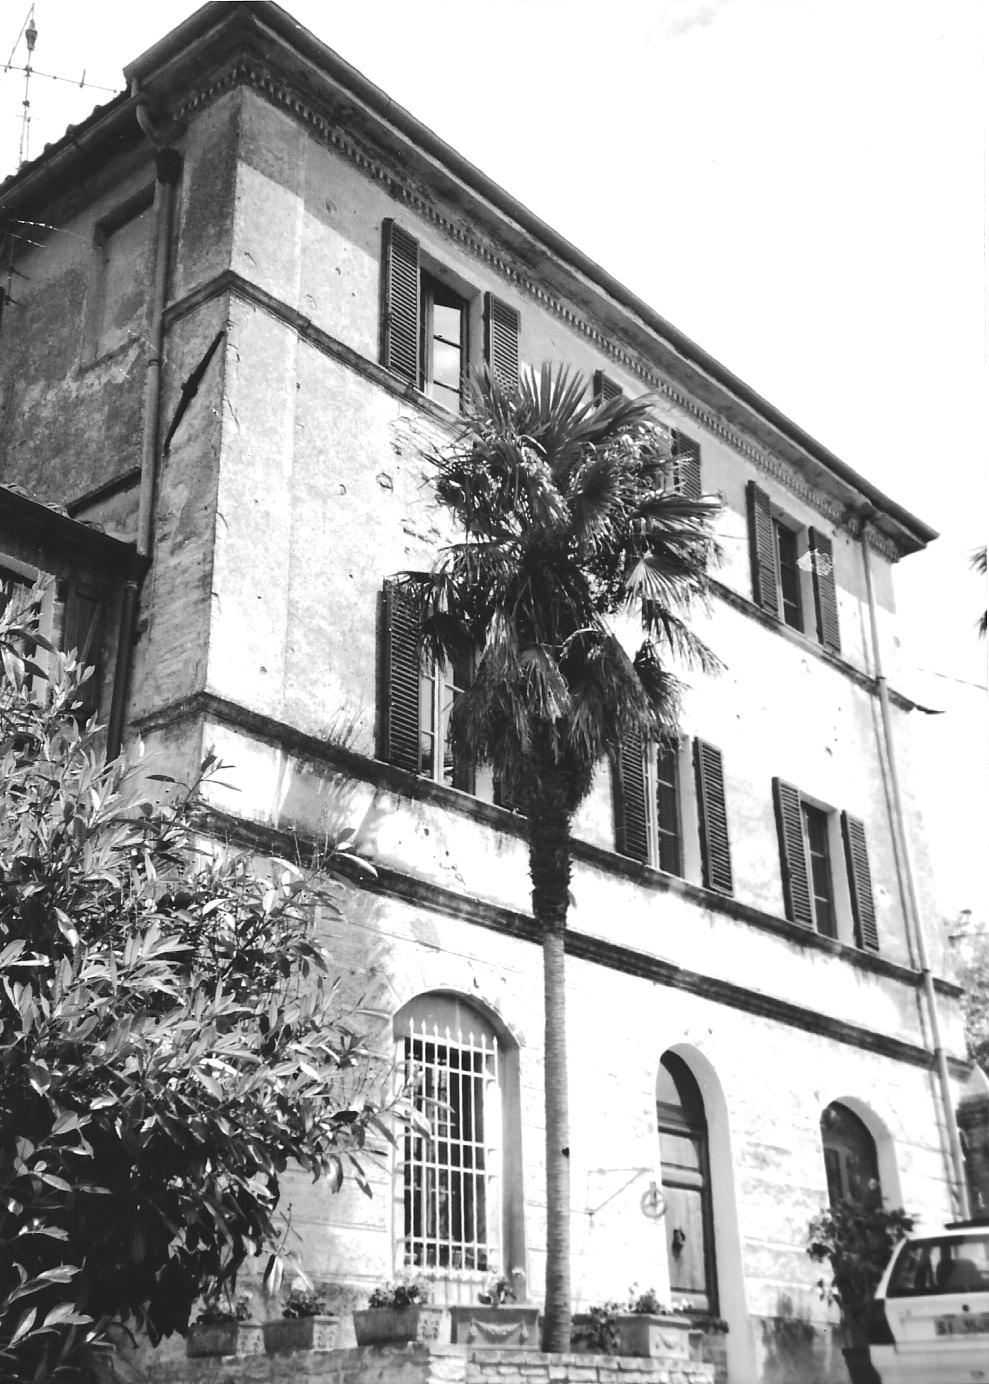 Villa fuori Porta ai Tufi (villa, signorile) - Siena (SI) 